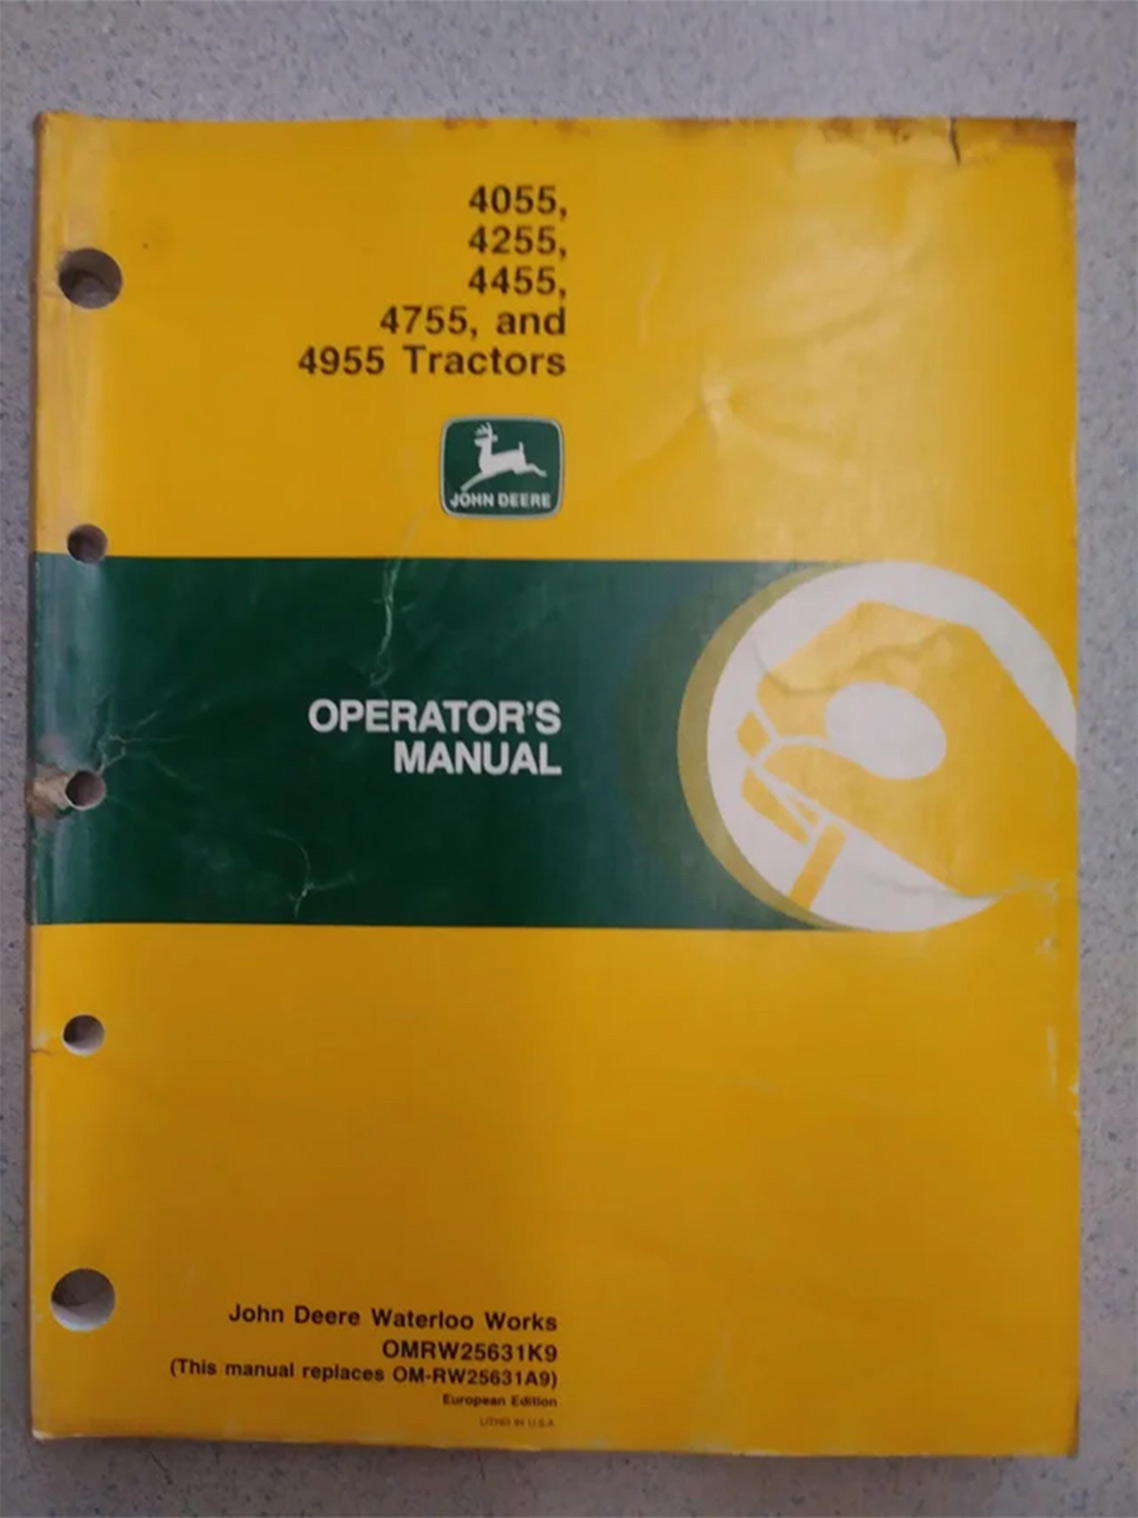 John Deere 4055, 4255, 4455, 4755 and 4955 Operator's Manual